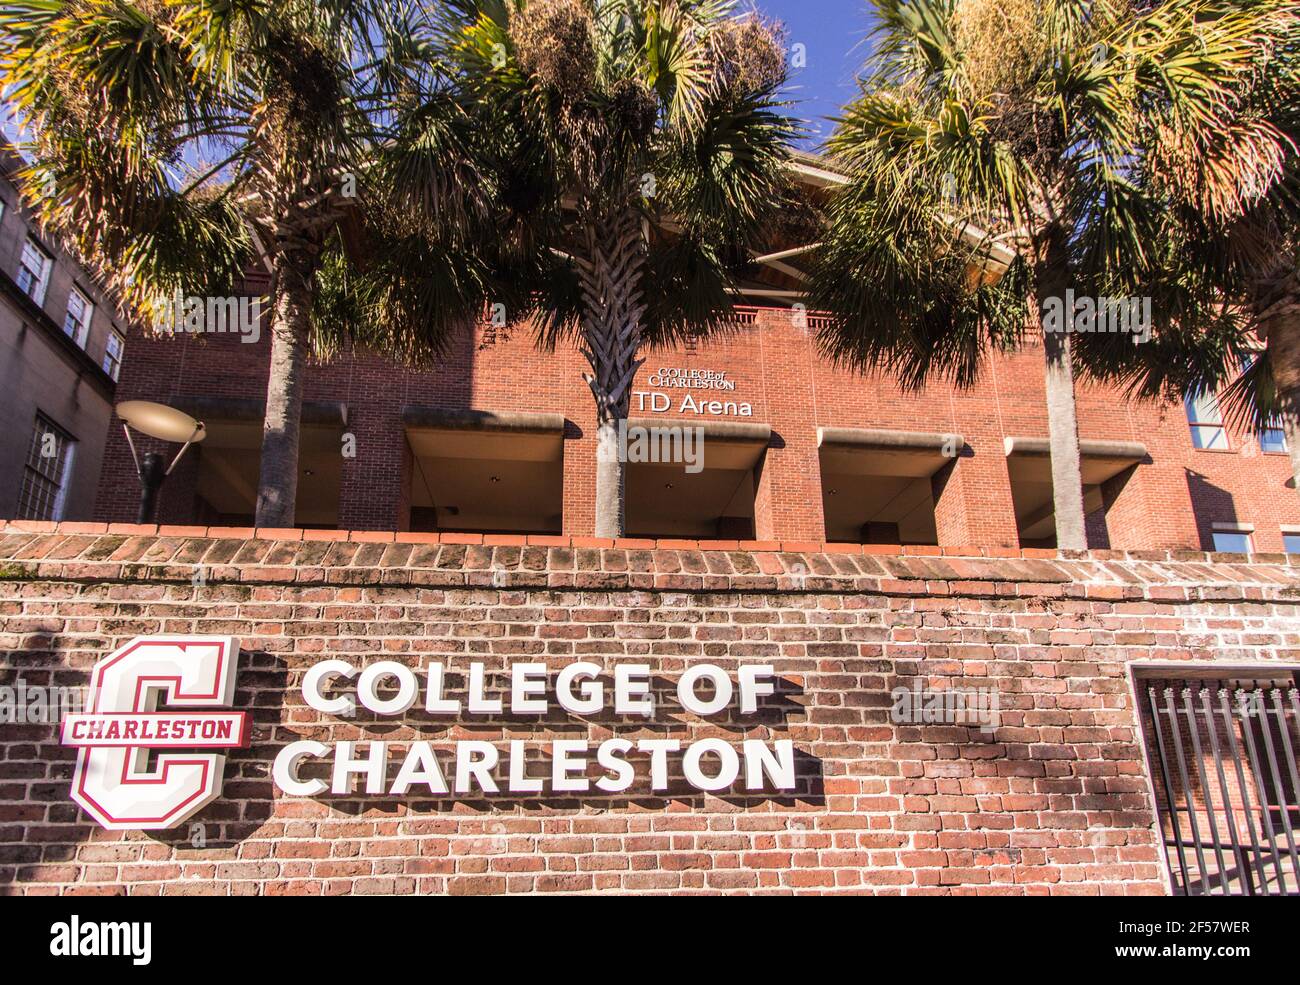 Exterior del College of Charleston ubicado en el centro histórico de Charleston. El colegio fue fundado en 1770 y es uno de los más antiguos de América. Foto de stock